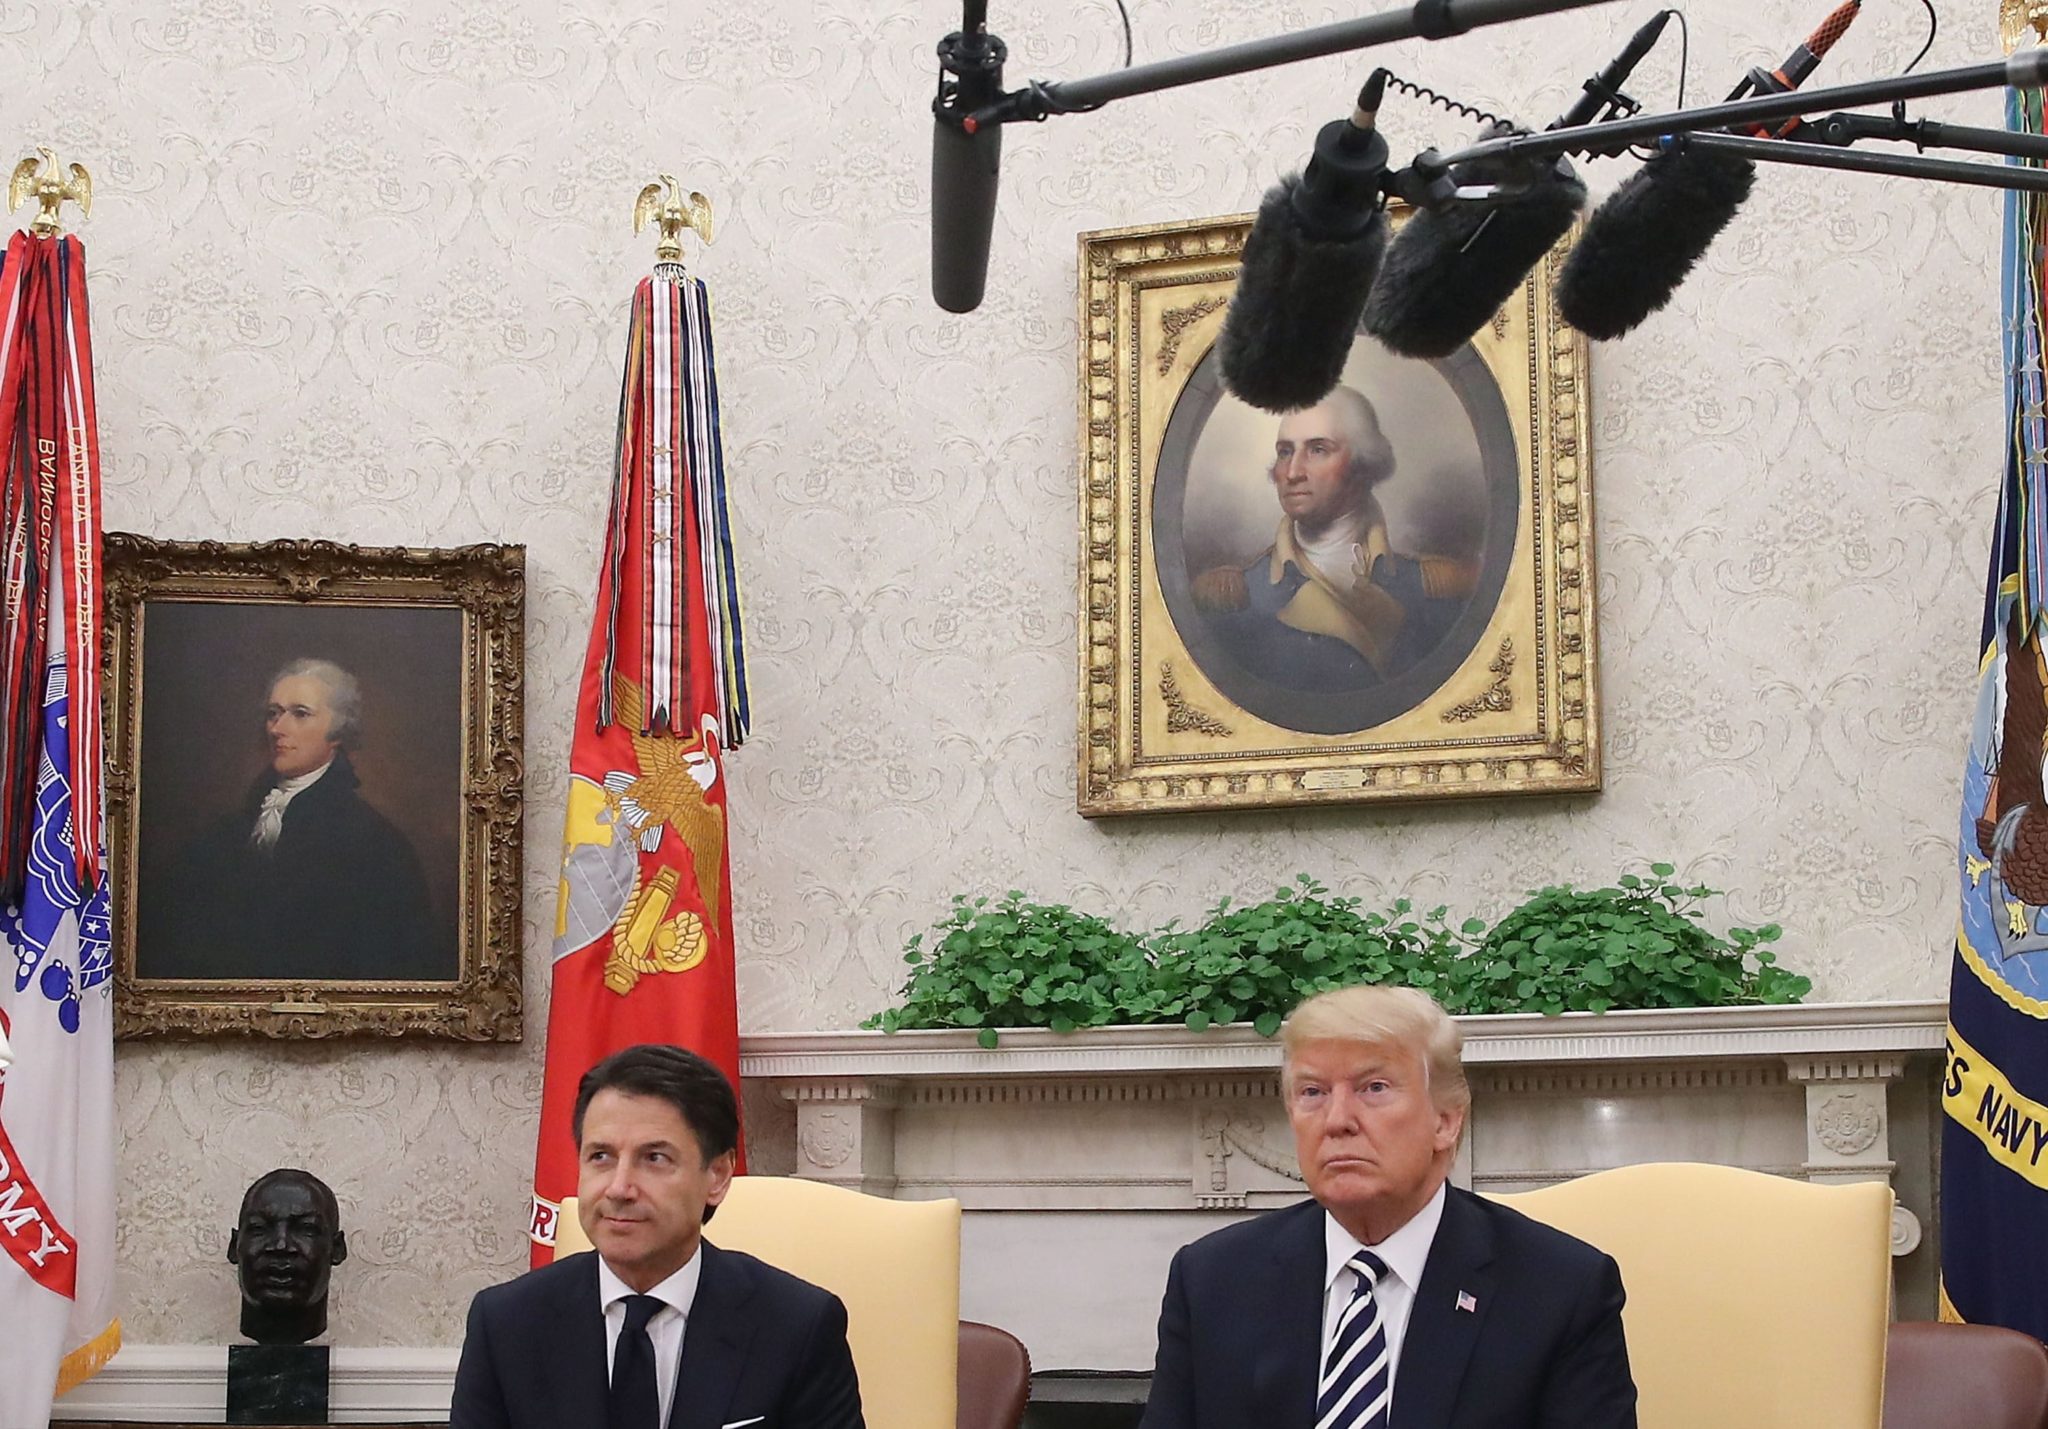 Biały Dom, Waszyngton. Prezydent Donald Trump spotyka się z włoskim premierem Giuseppe Conte, fot. Mark Wilson, PAP/EPA 